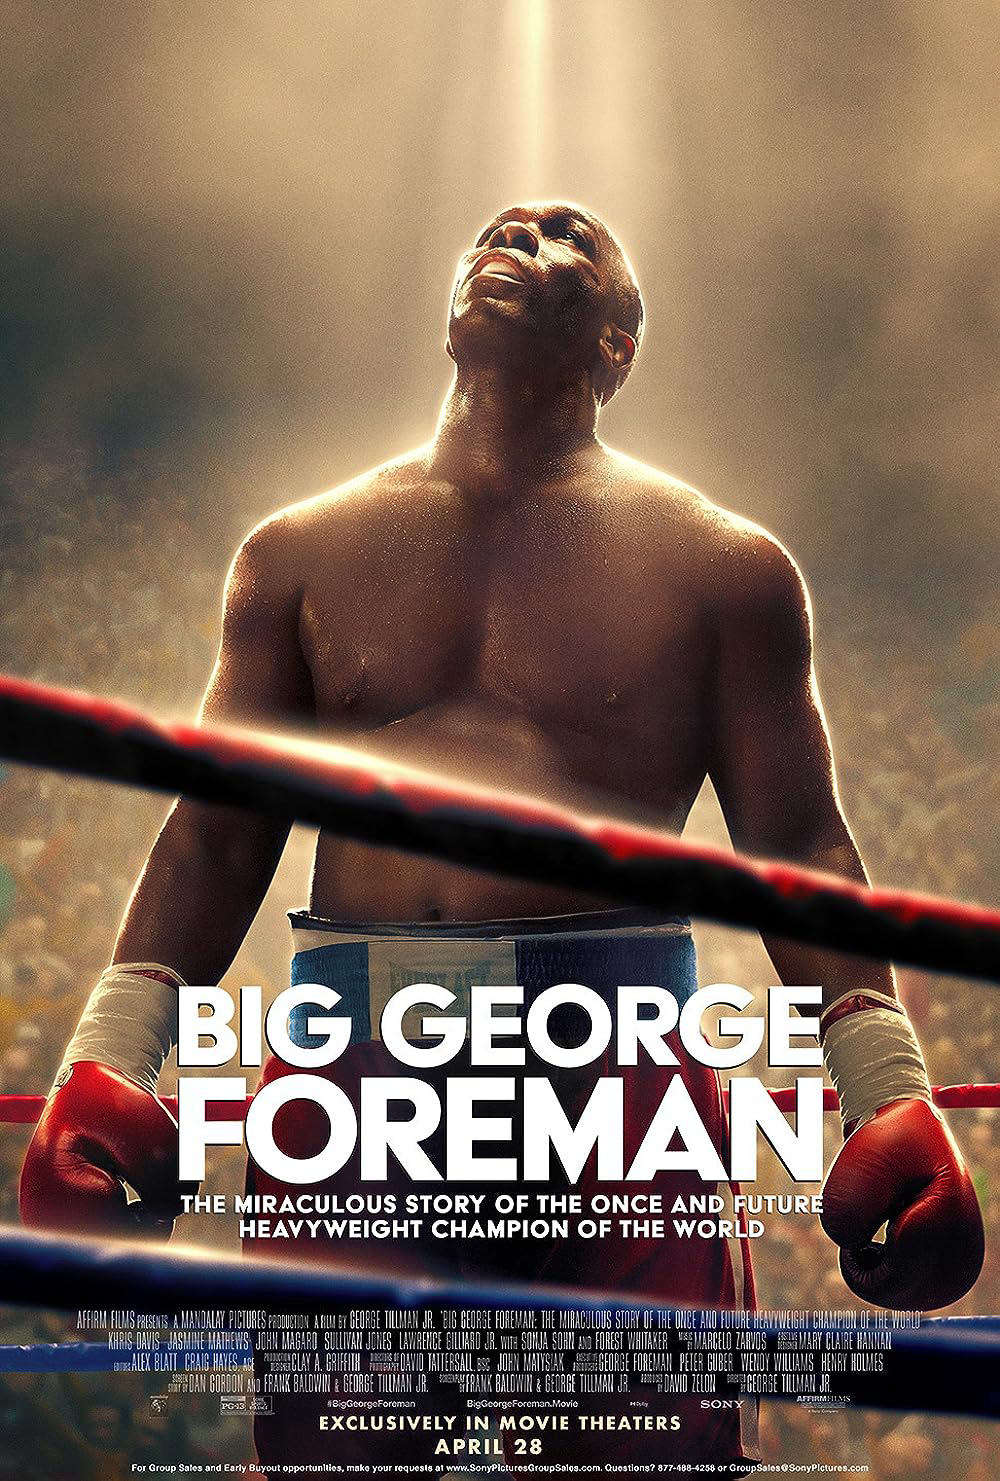 Xem Phim Big George Foreman: Câu chuyện kỳ diệu về nhà vô địch quyền Anh hạng nặng (Big George Foreman: The Miraculous Story of the Once and Future Heavyweight Champion of the World)